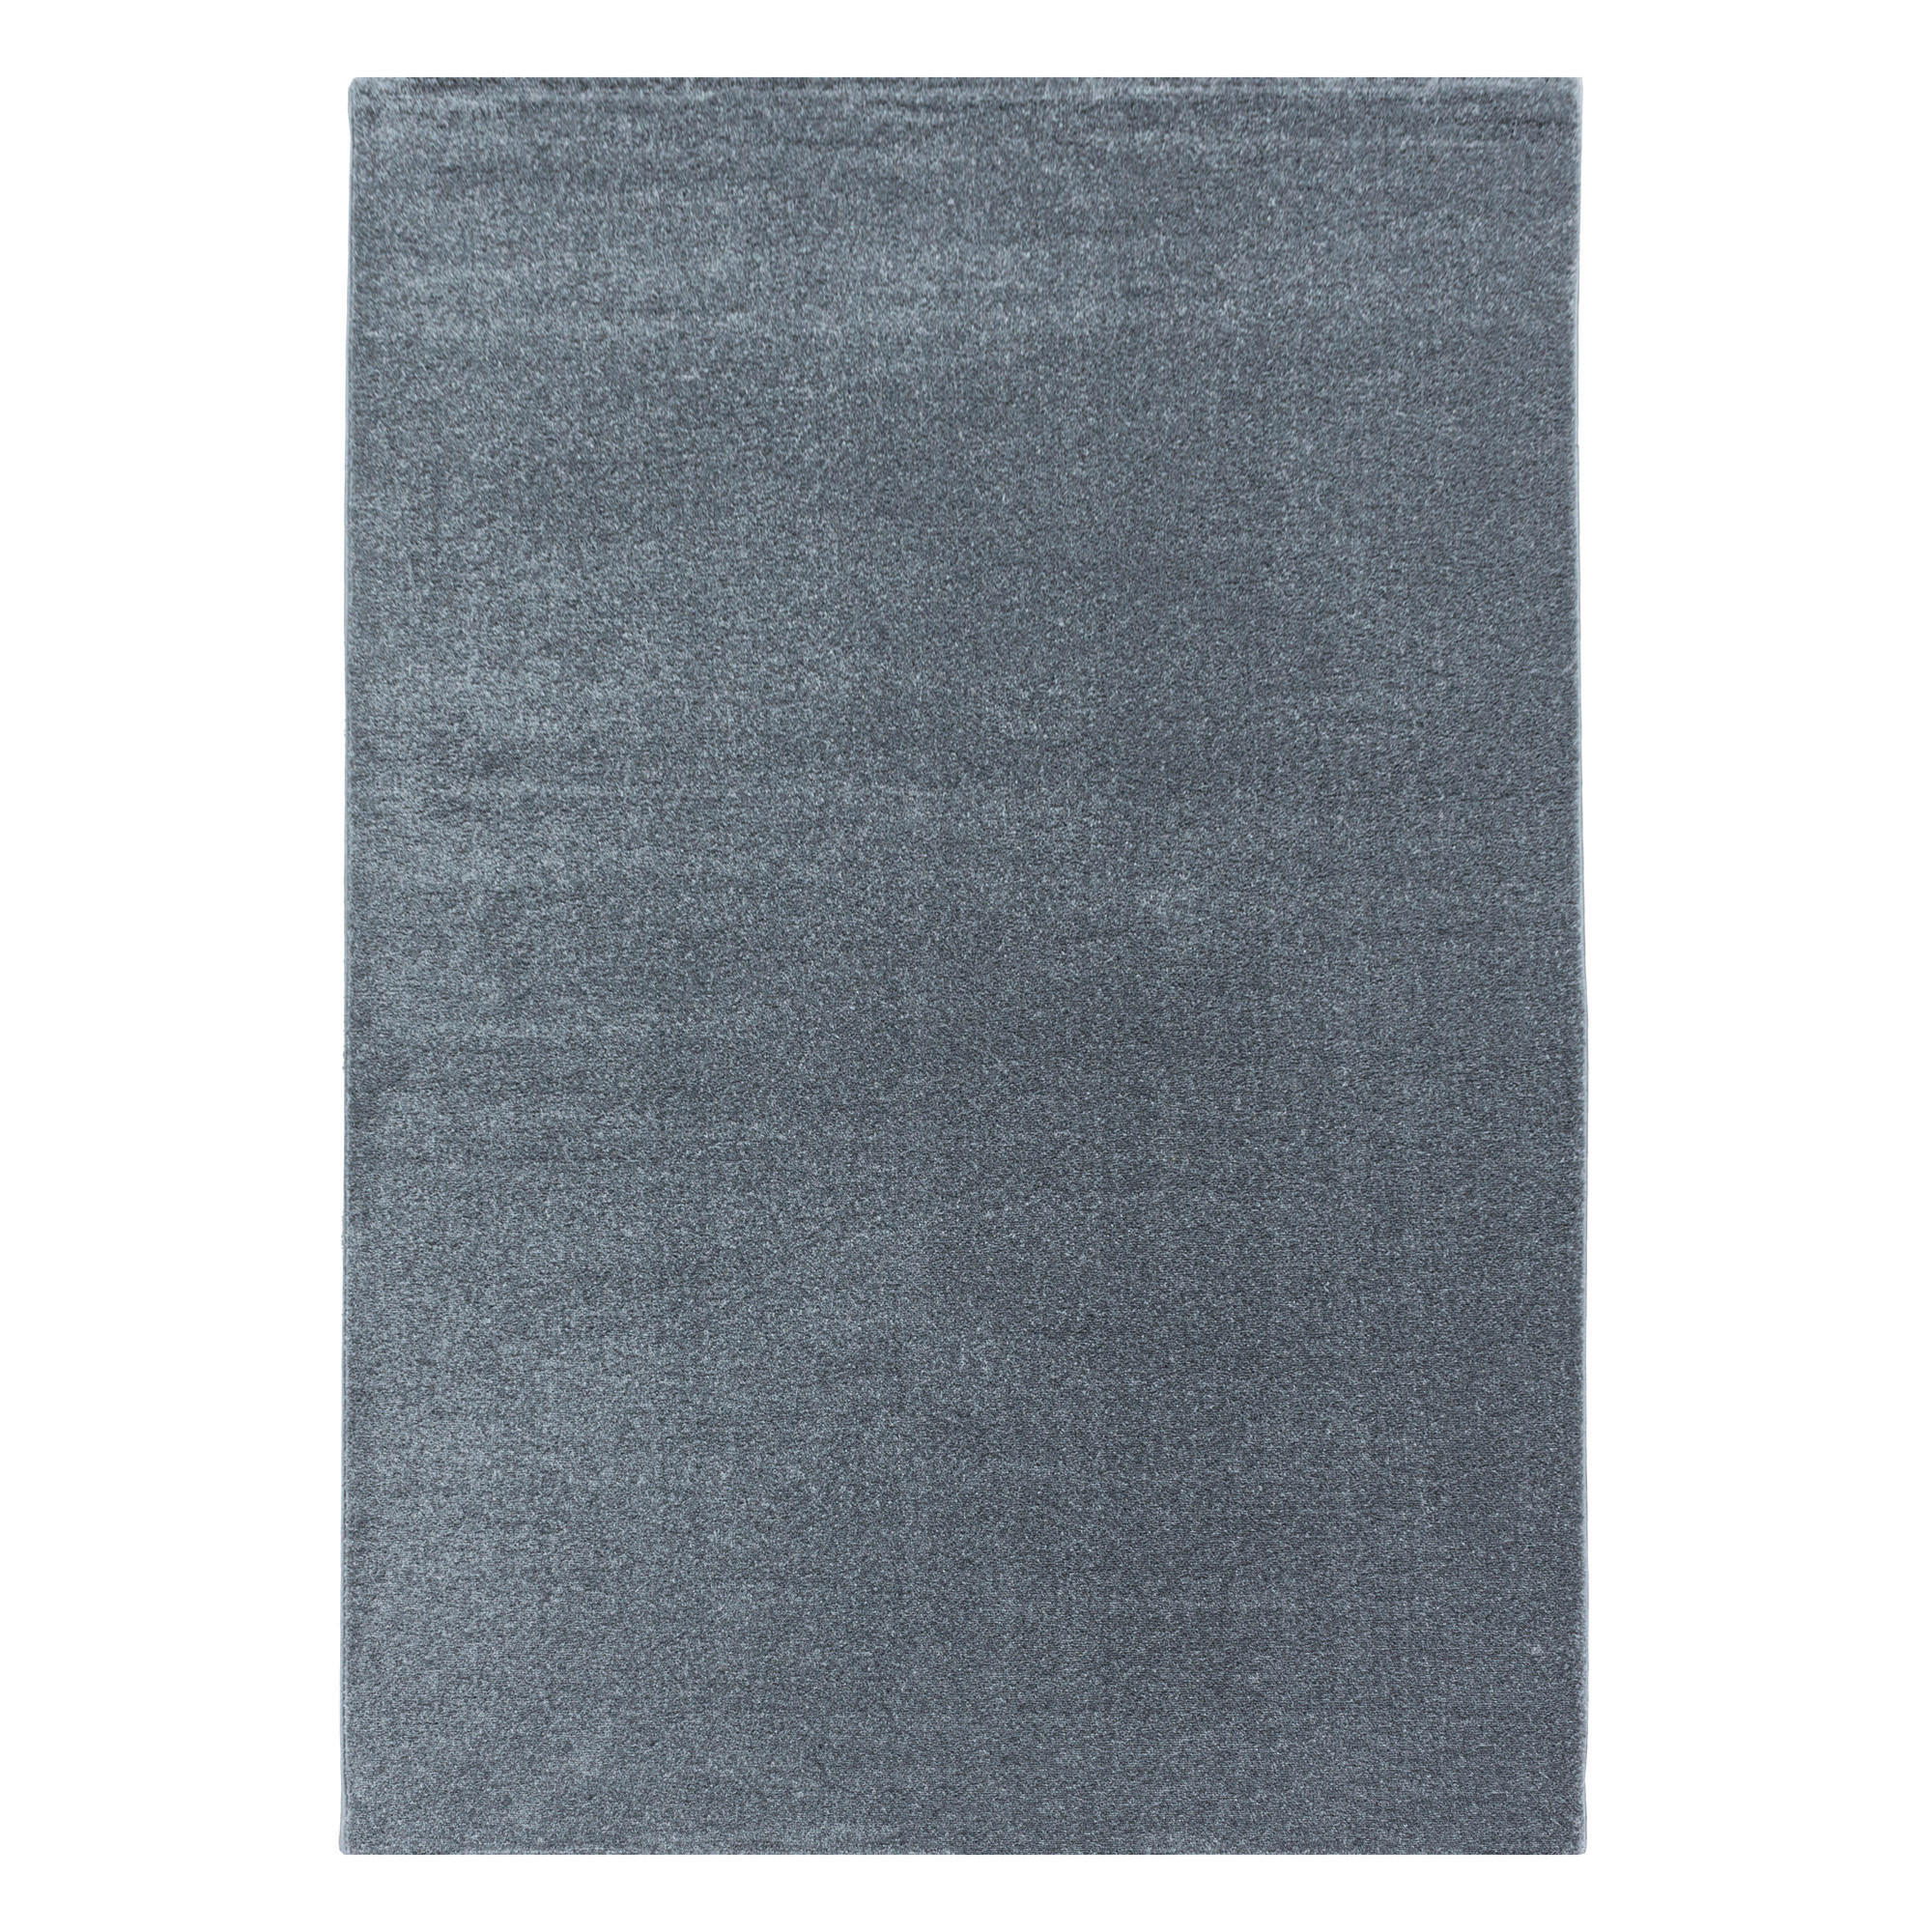 HOCHFLORTEPPICH 80/150 cm Rio 4600 silber  - Silberfarben, Basics, Textil (80/150cm) - Novel